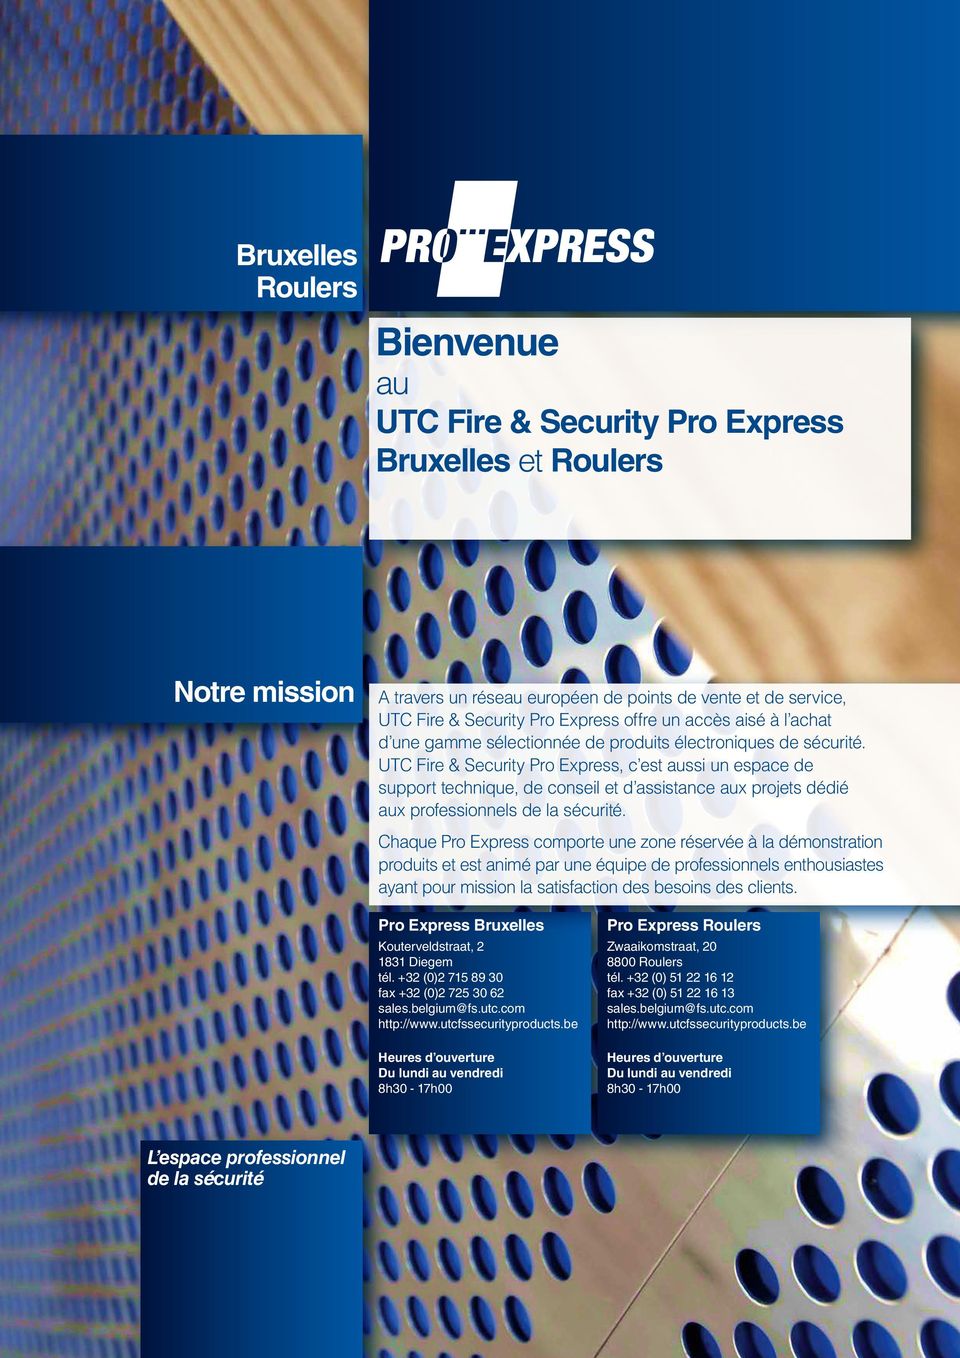 UTC Fre & Securty Pro Express, c est auss un espace de support technque, de consel et d assstance aux projets dédé aux professonnels de la sécurté.